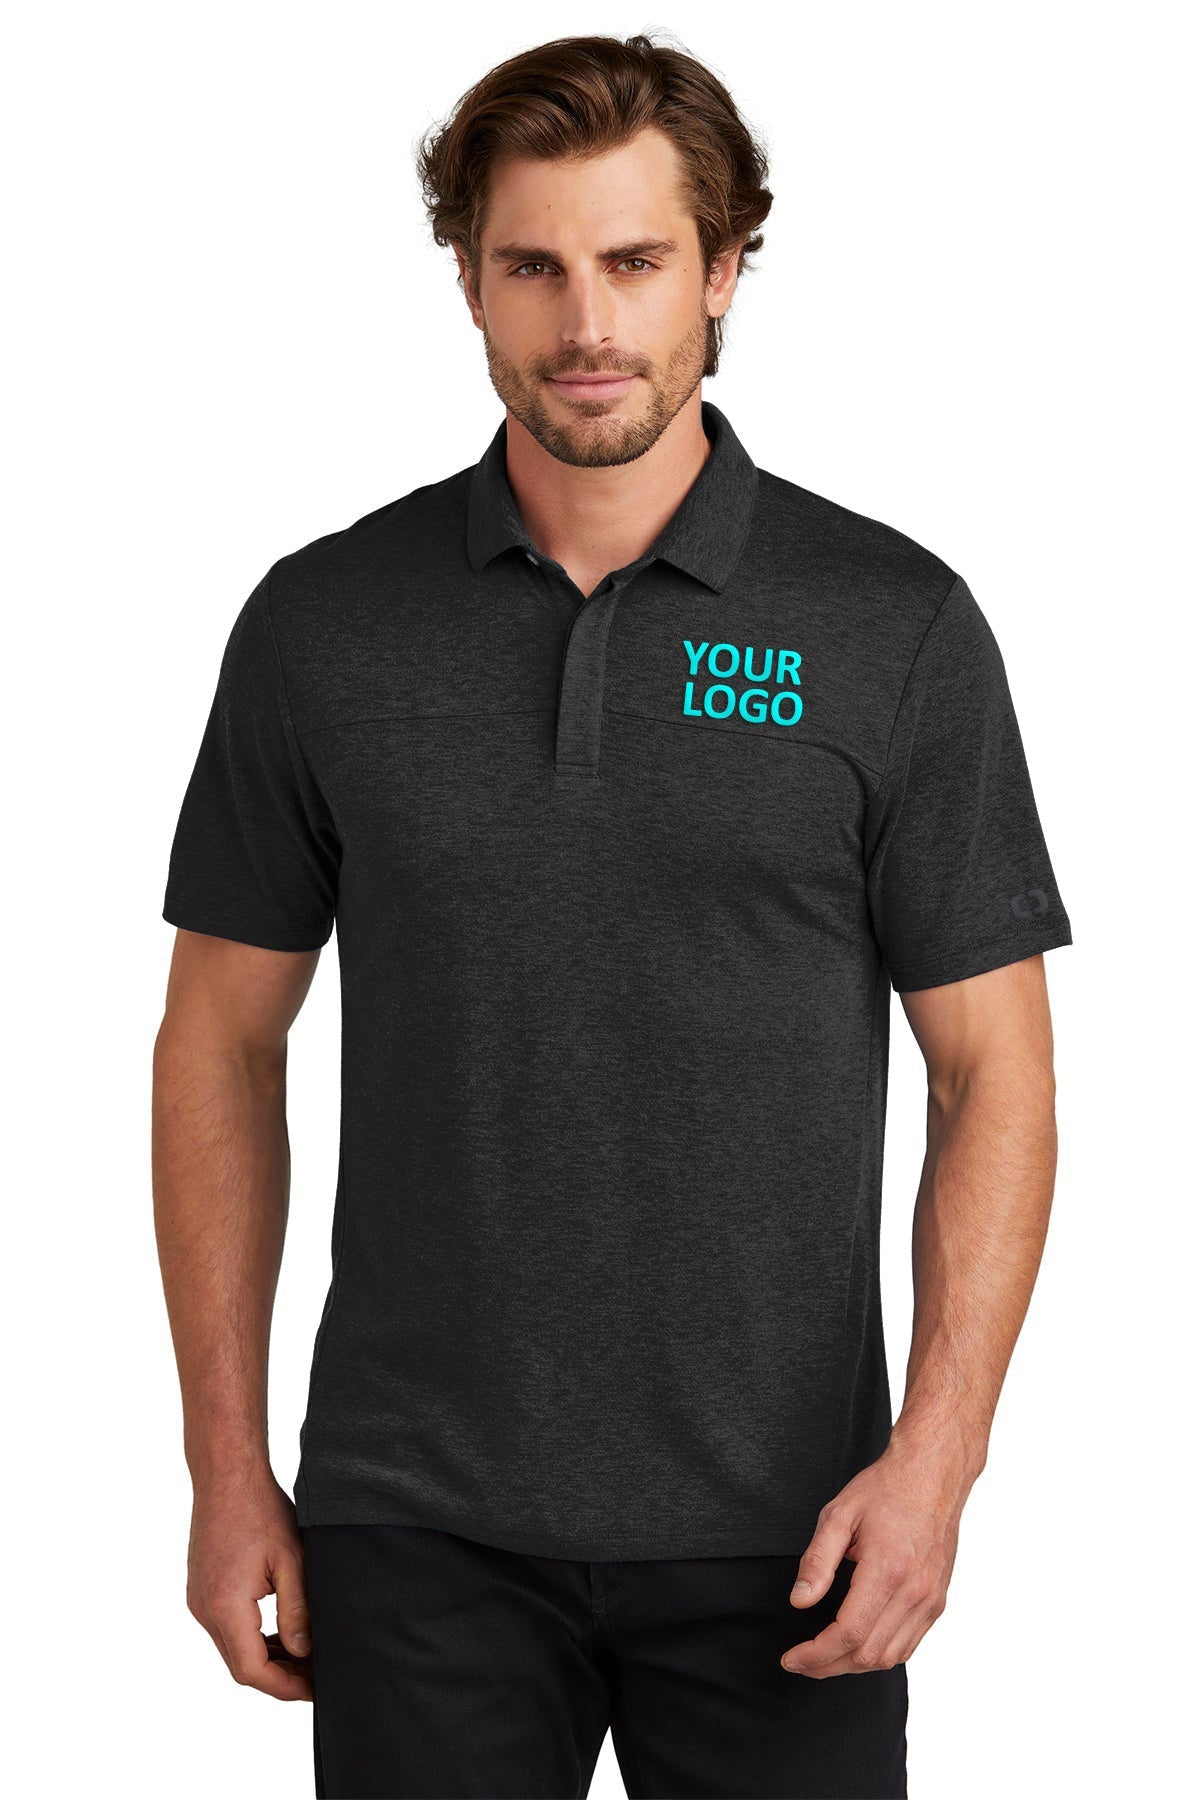 OGIO Blacktop OG150 custom embroidered polo shirts